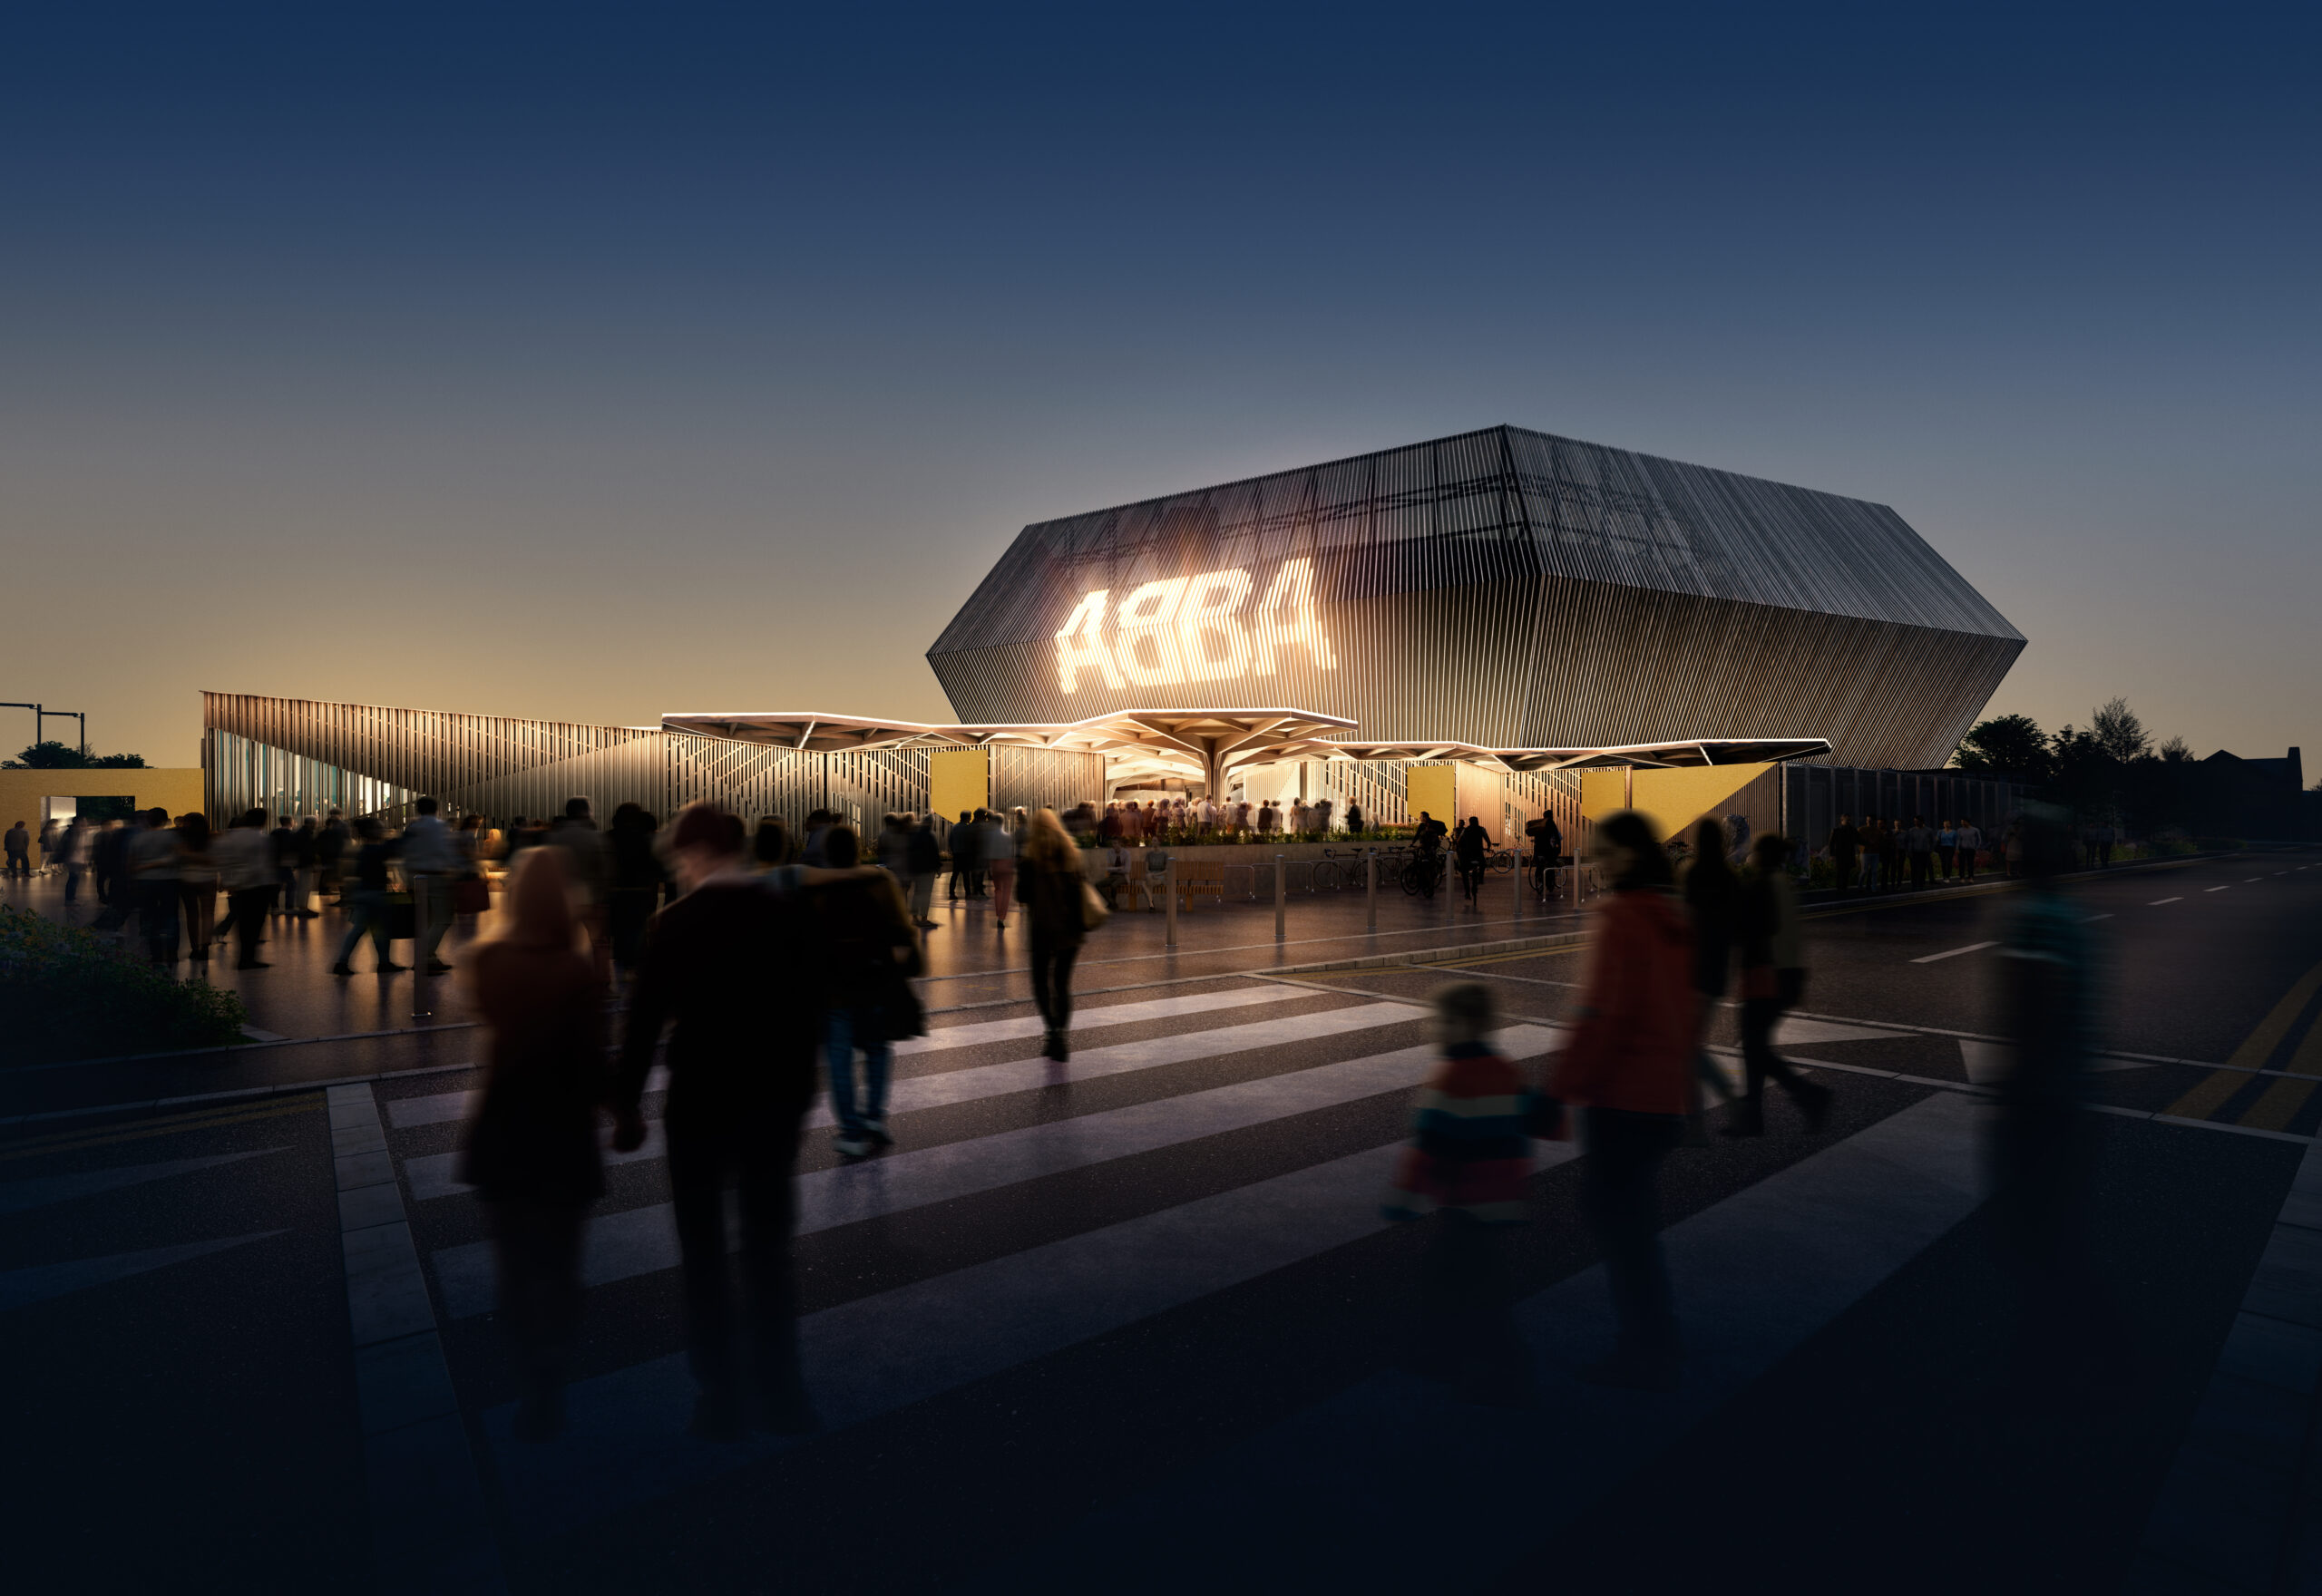 Conheça a arena temporária dos shows virtuais do ABBA!